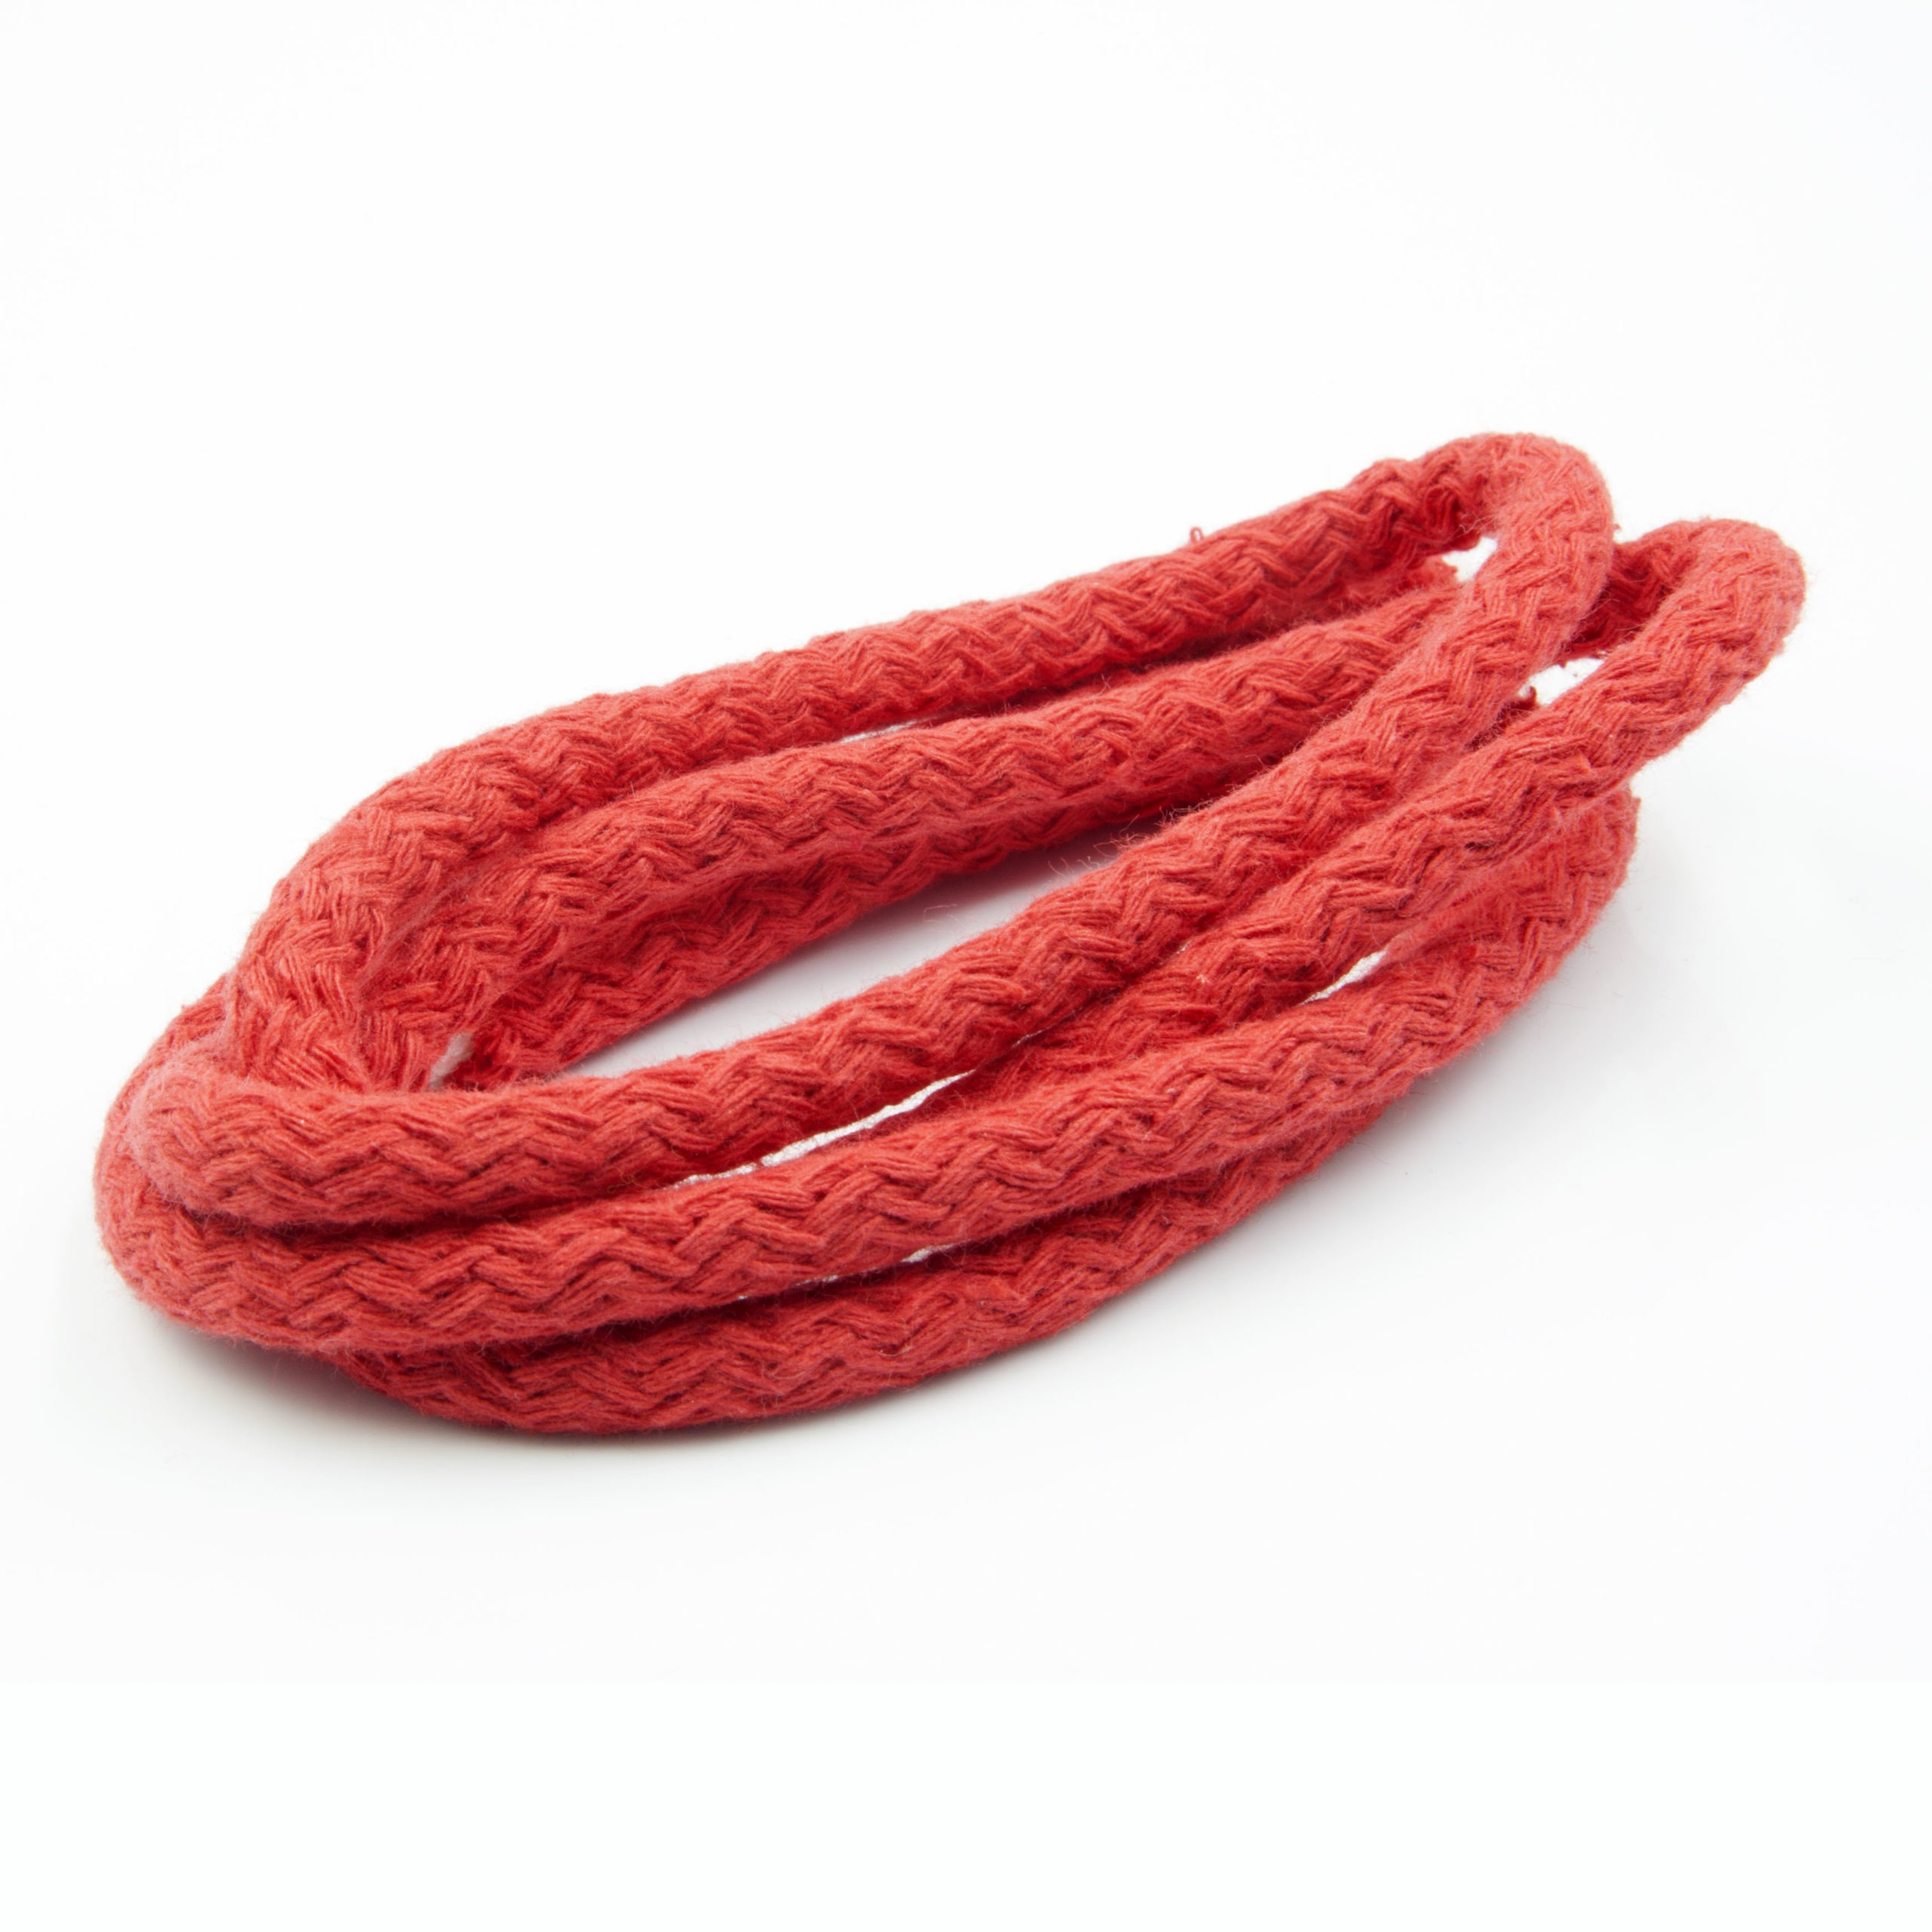 Sznurek bawełniany okrągły w kolorze czerwonym do odzieży, obuwia i wyrobów ekologicznych.